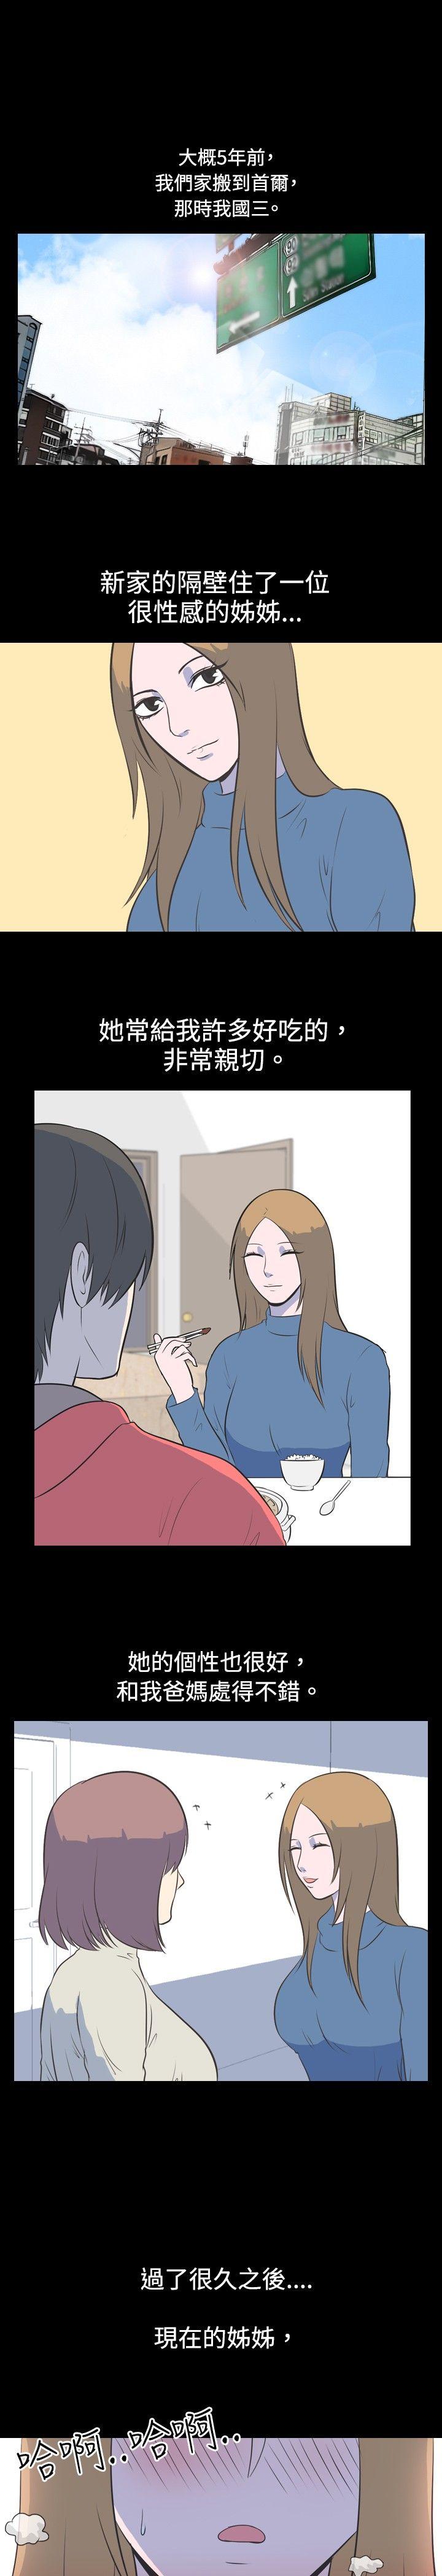 韩国污漫画 我的色色夜說 第28话-隔壁姊姊(上) 1